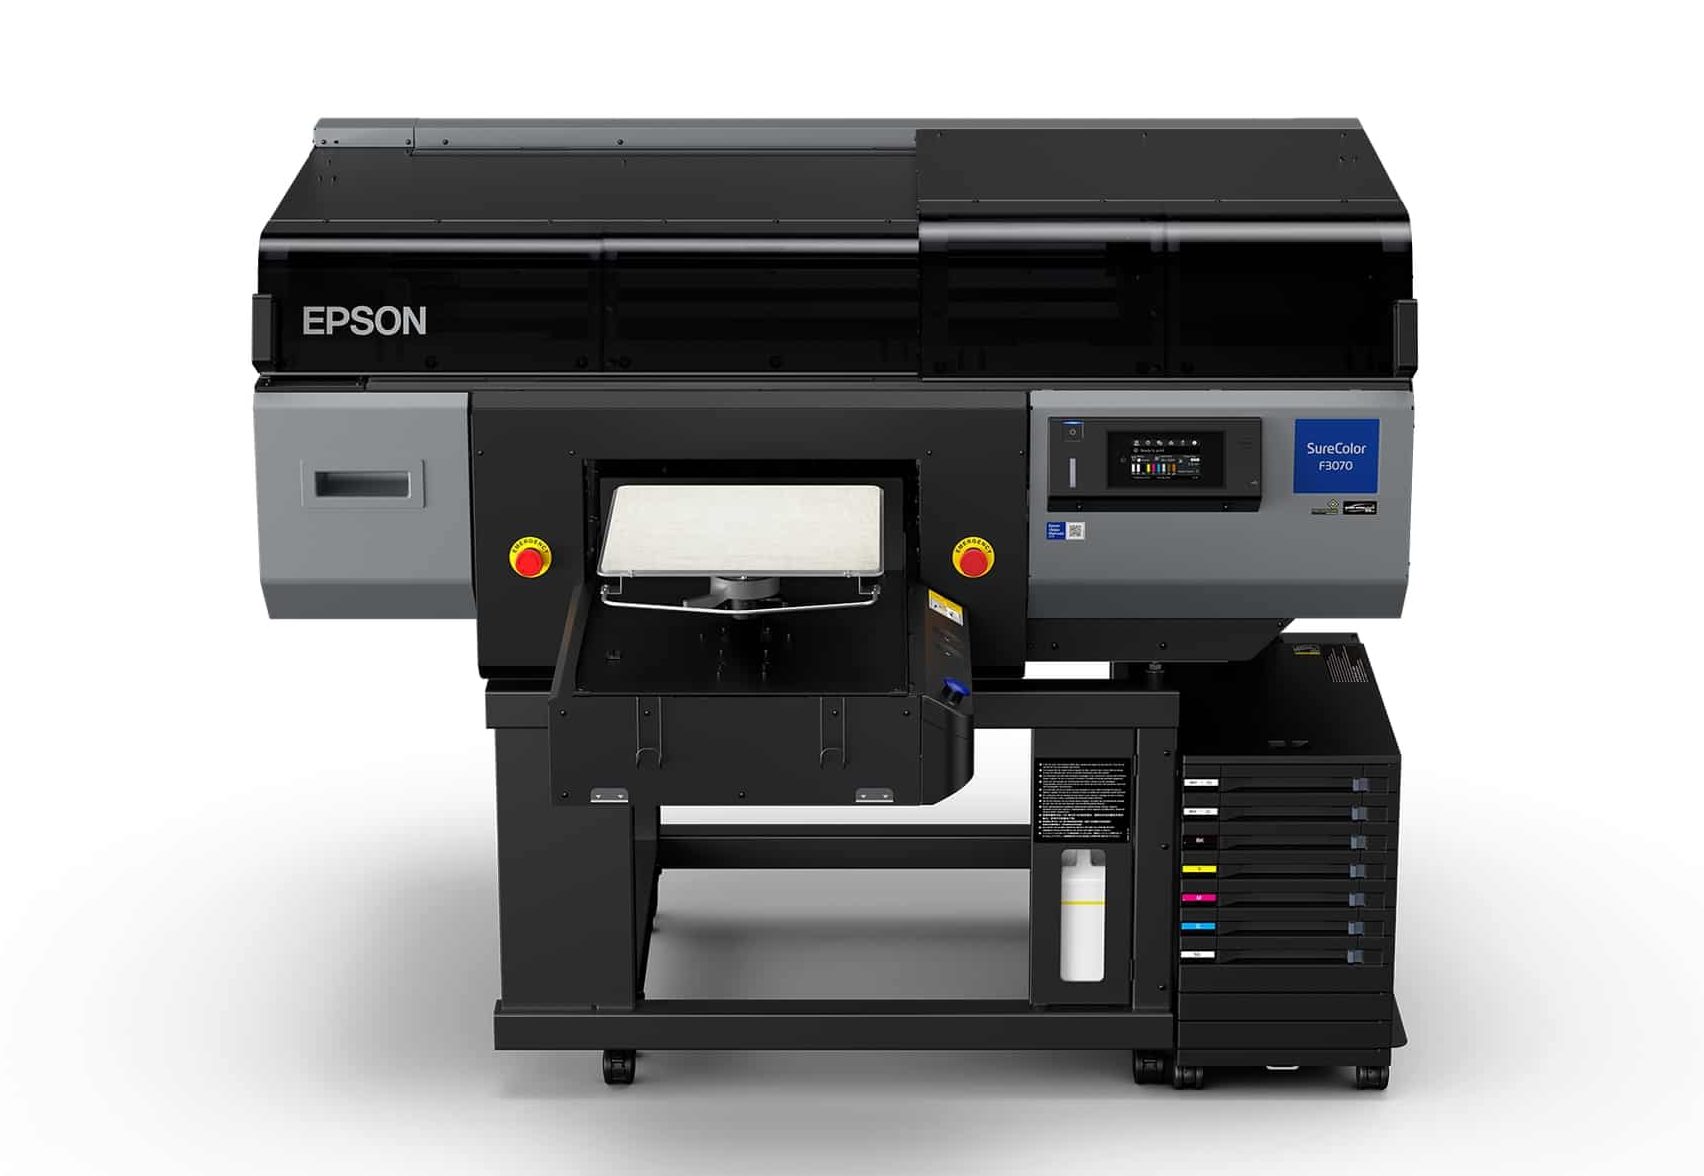 Epson ra mắt máy in phun trực tiếp lên áo (DTG) cấp độ công nghiệp đầu tiên dành cho các nhà cung cấp dịch vụ in ấn trên áo